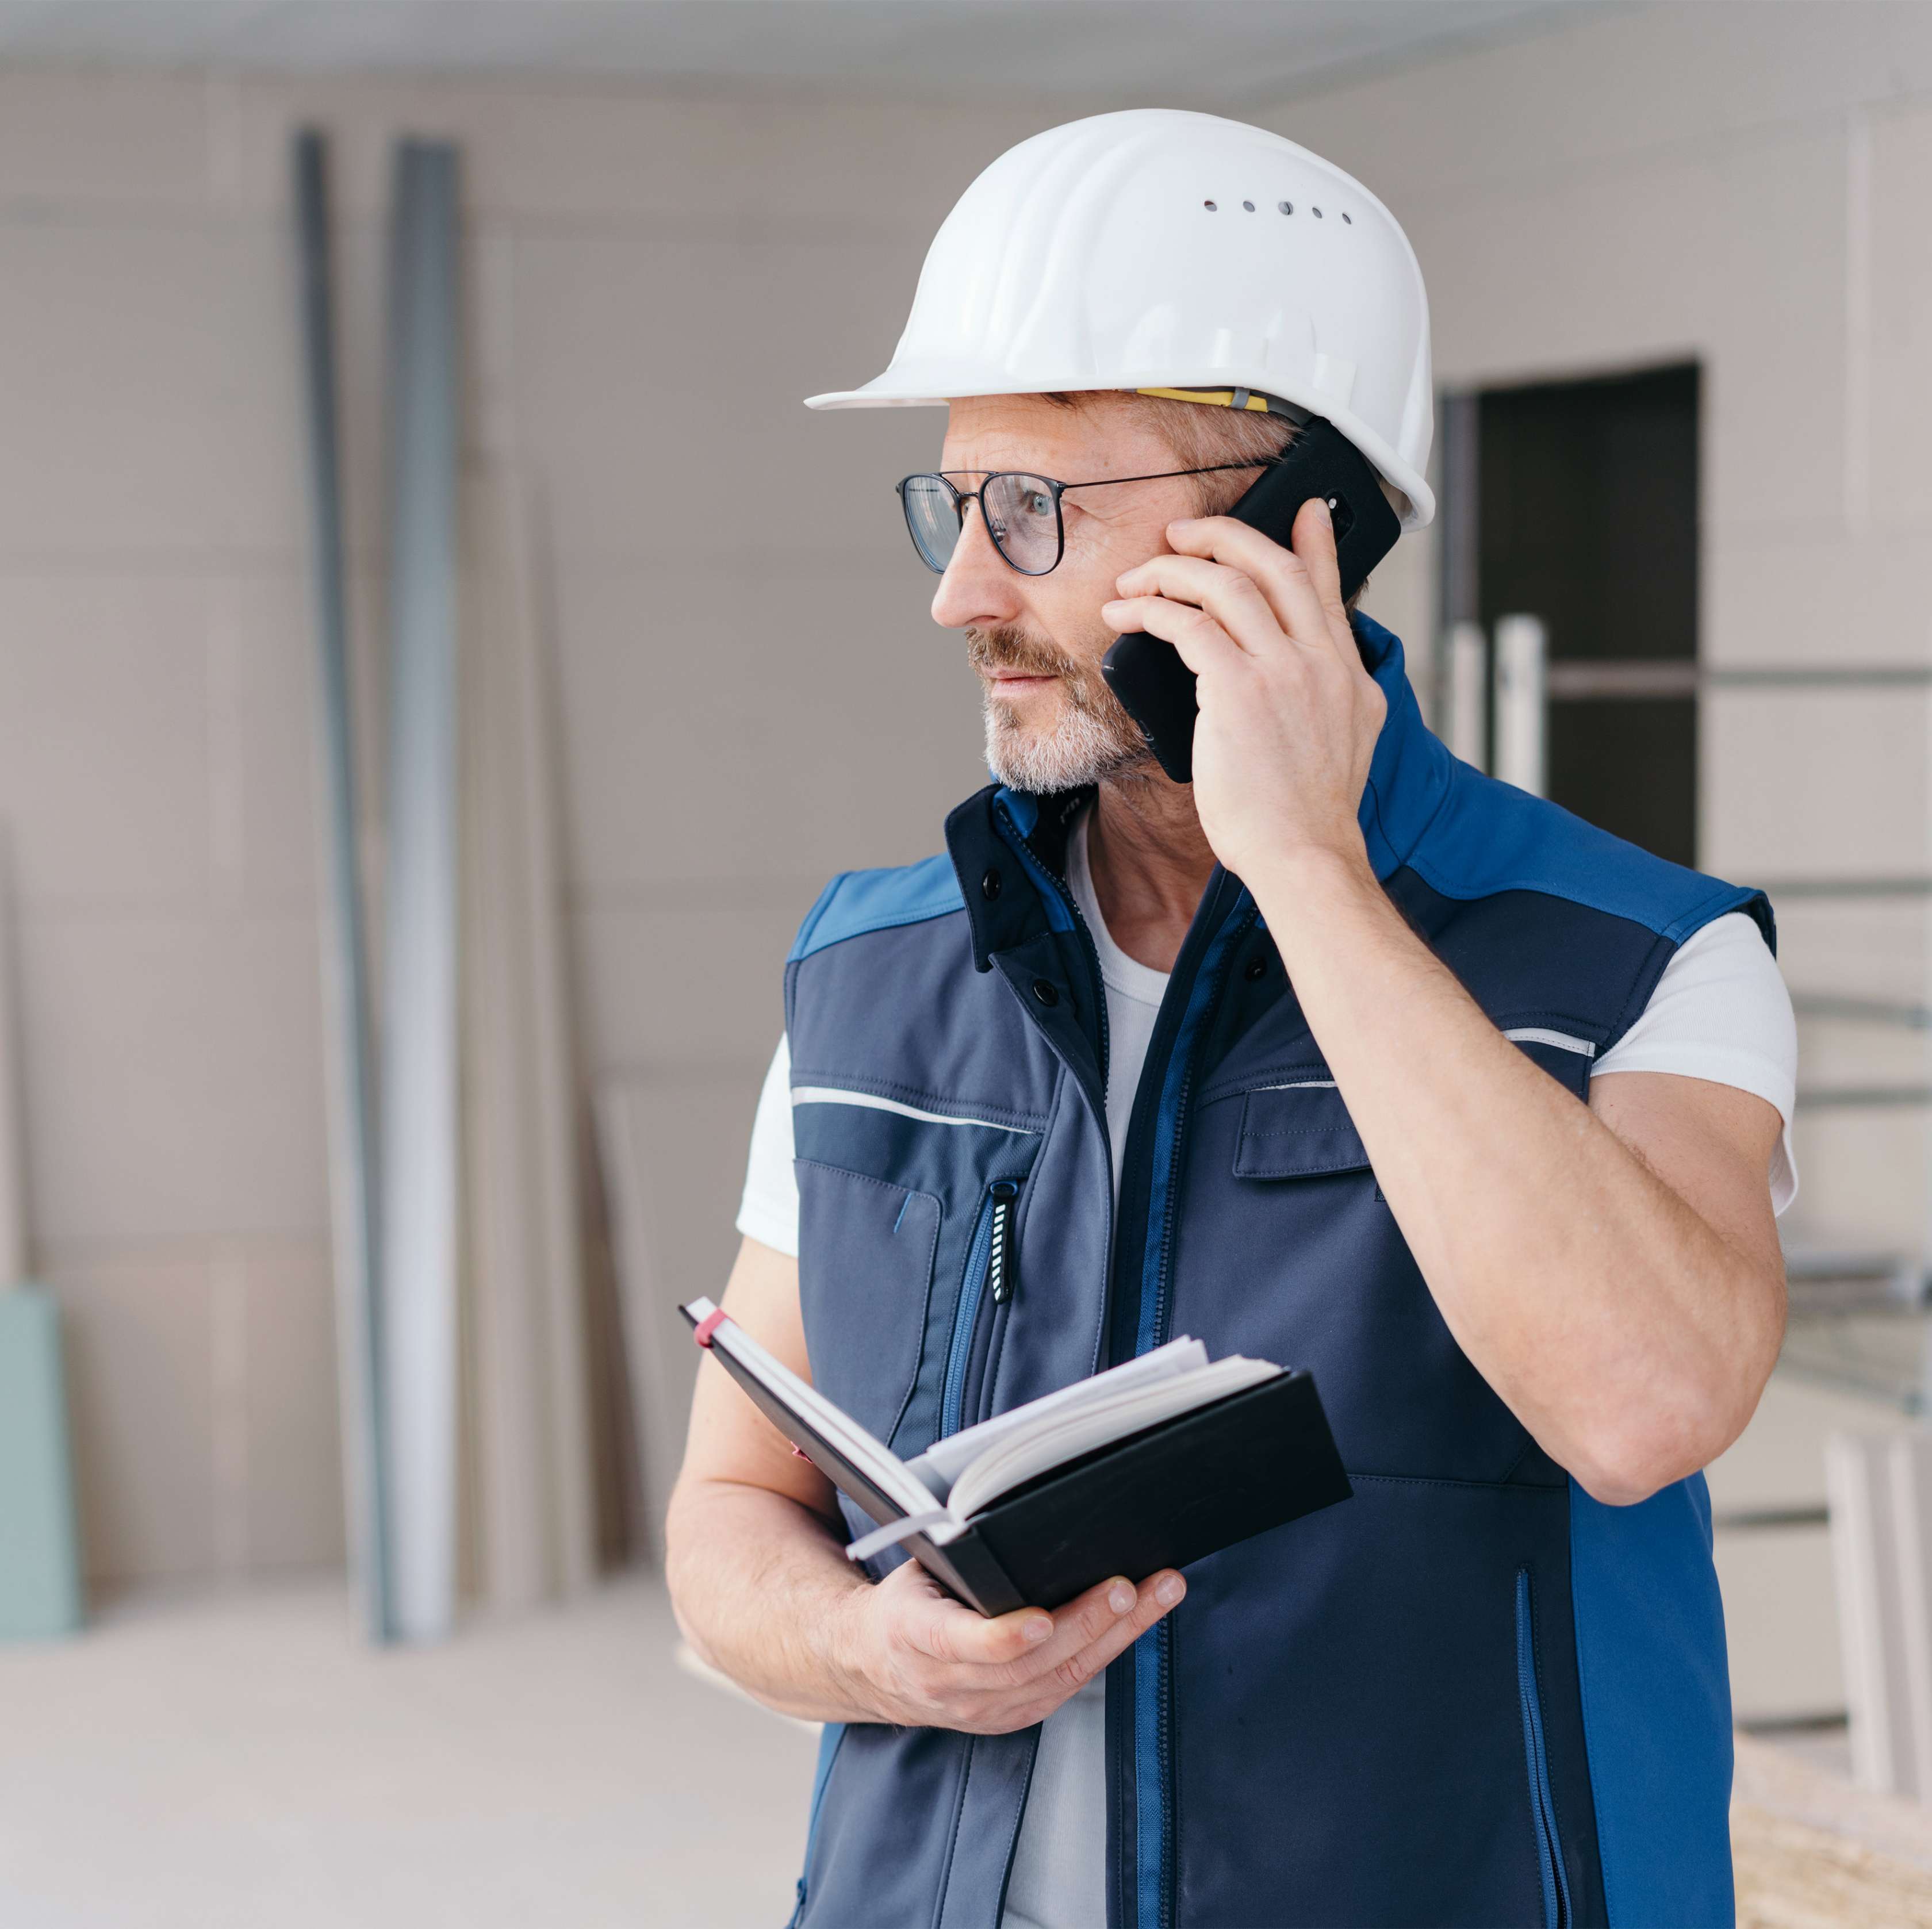 Ein Mann mit weißem Helm telefoniert auf einer Baustelle und hält dabei ein Notizbuch in der Hand